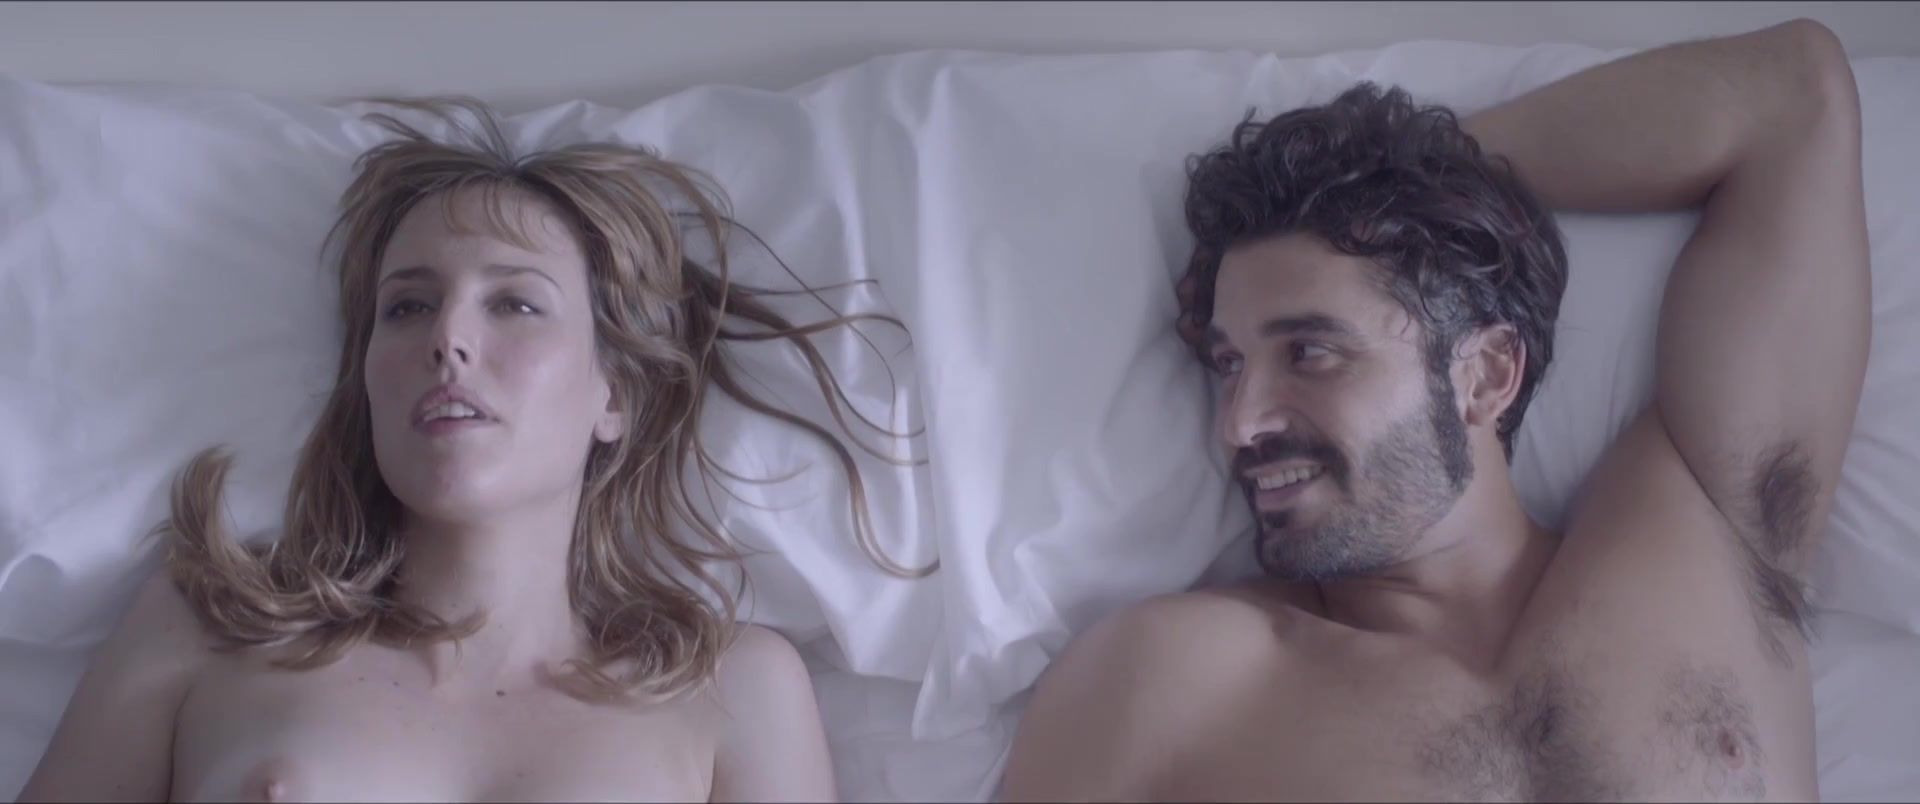 Facial Cumshot Natalia de Molina - Kiki, el amor se hace (2016) Femdom Pov - 2